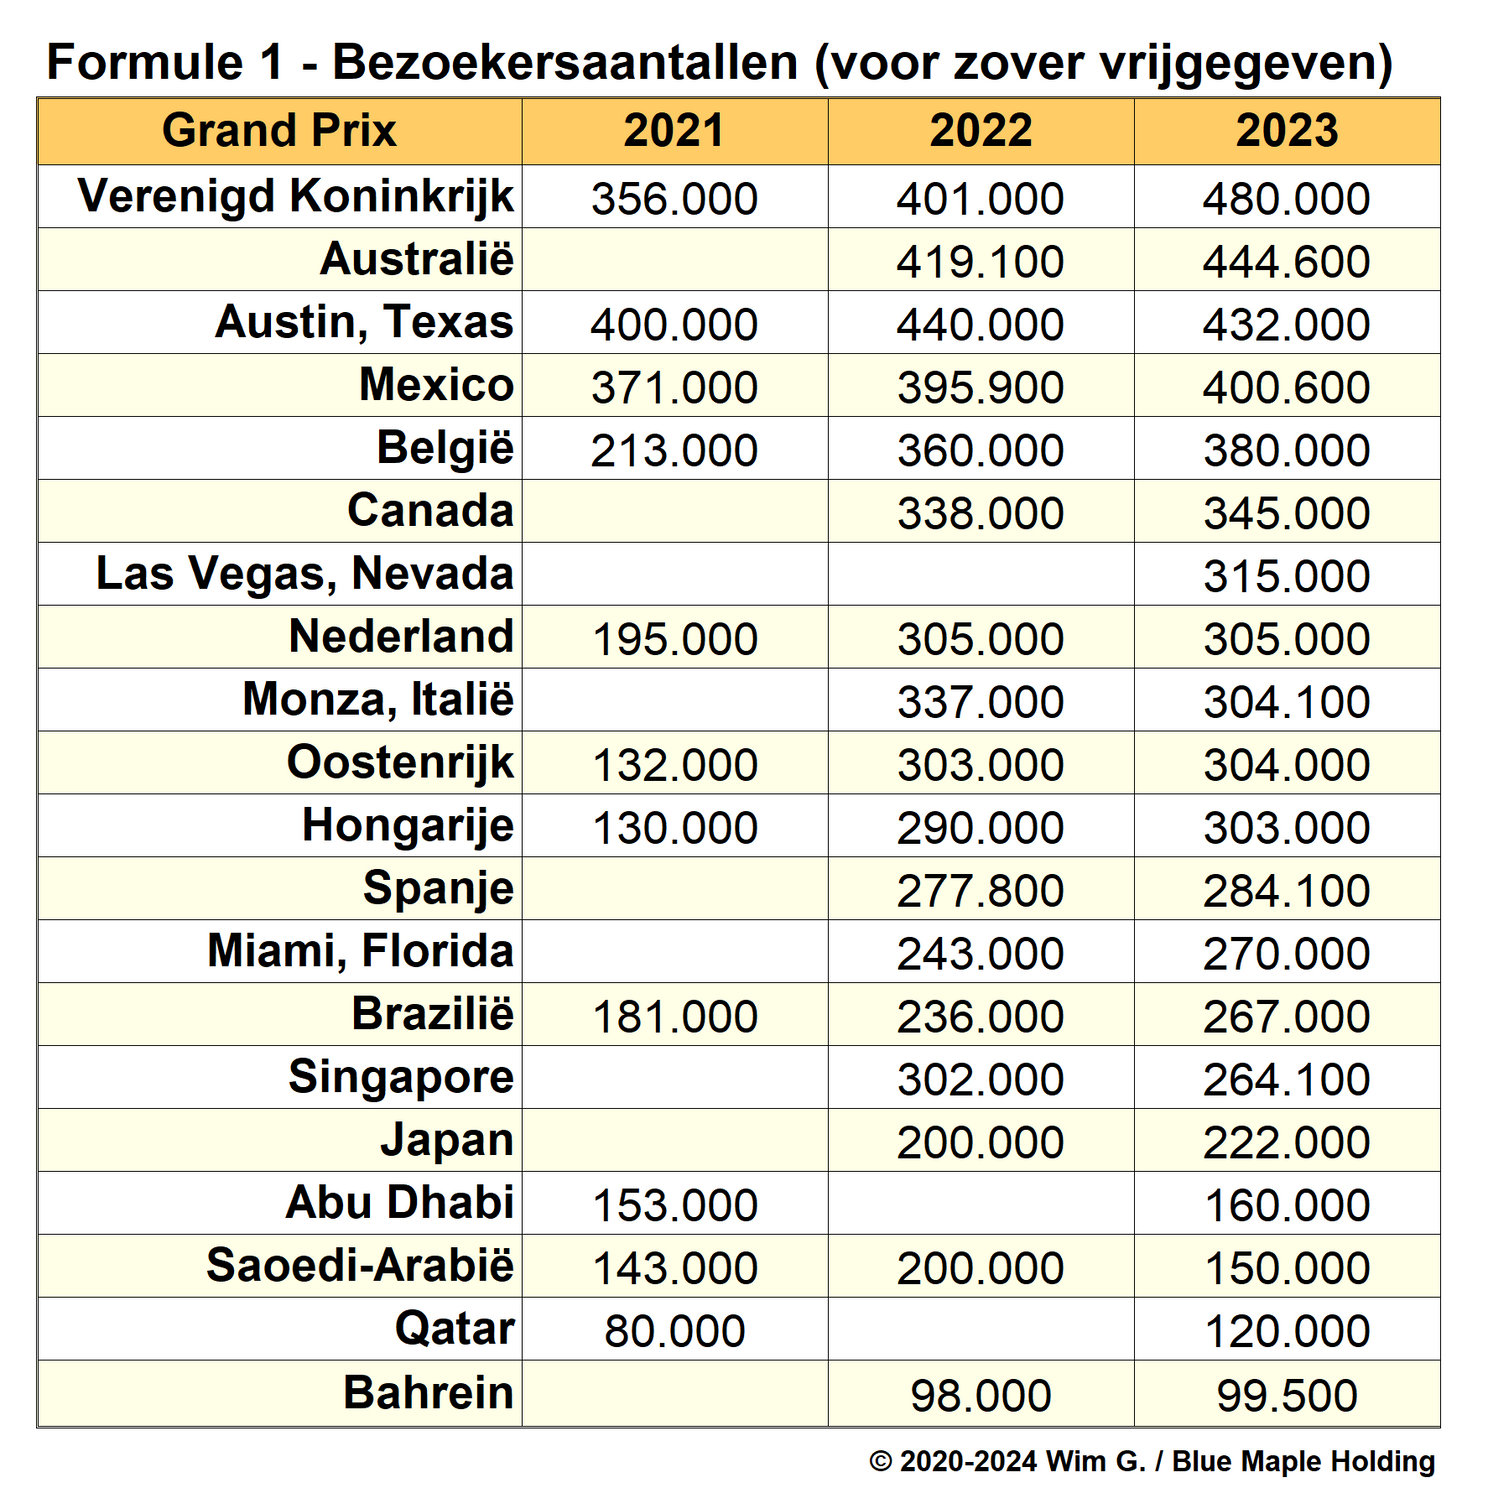 Tabel 2. Bezoekersaantallen Grands Prix vanaf 2021, voor zover vrijgegeven of gehouden.